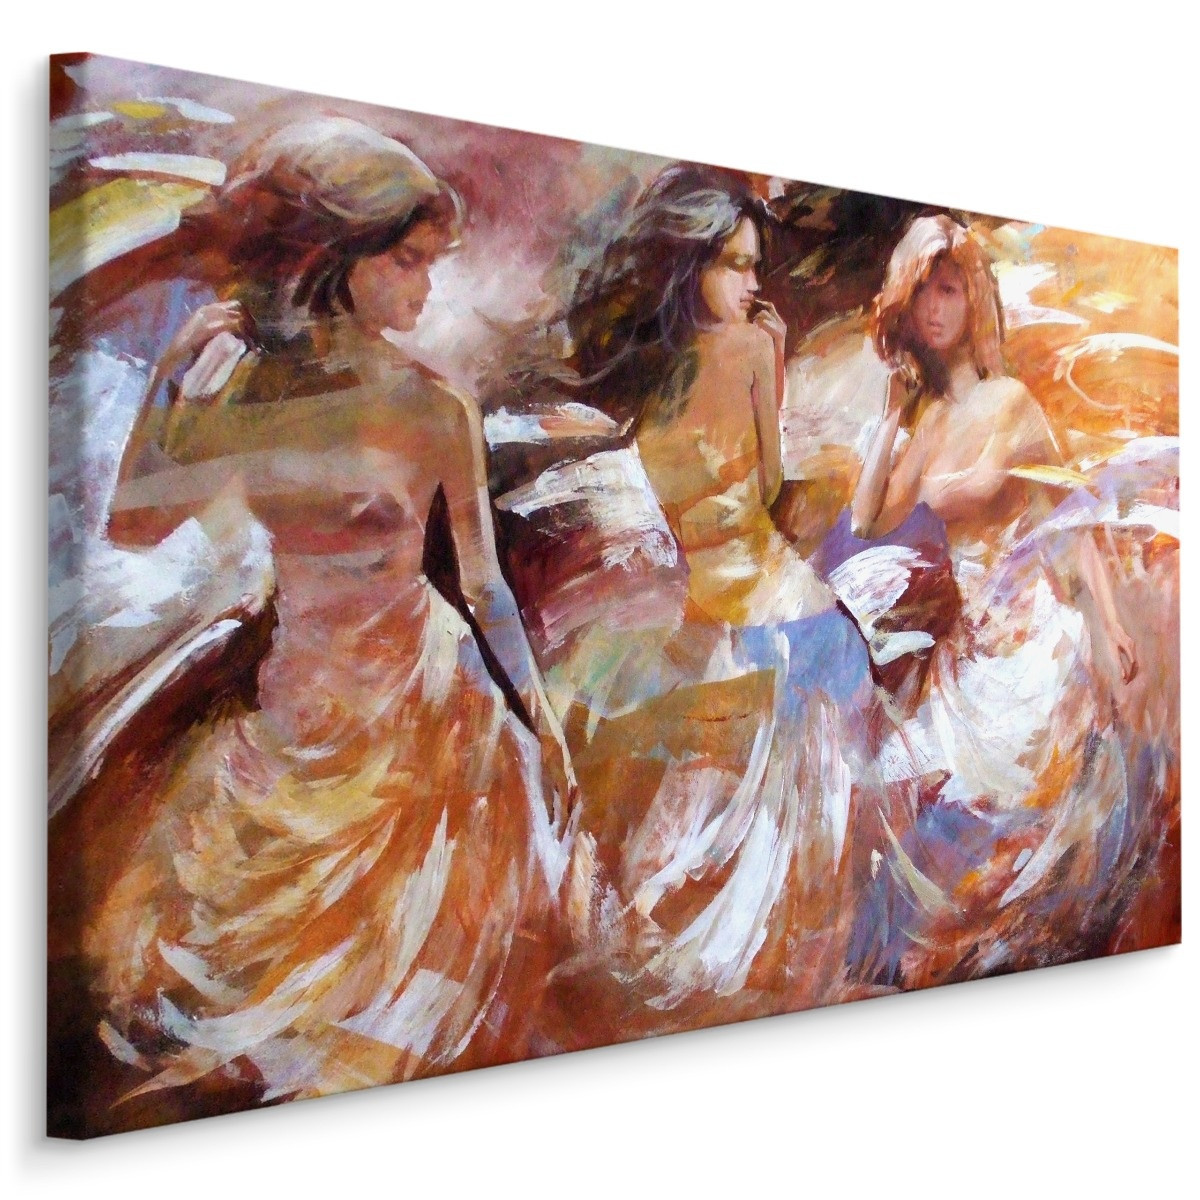 Schilderij - Drie Jonge Vrouwen, Premium Print op Canvas